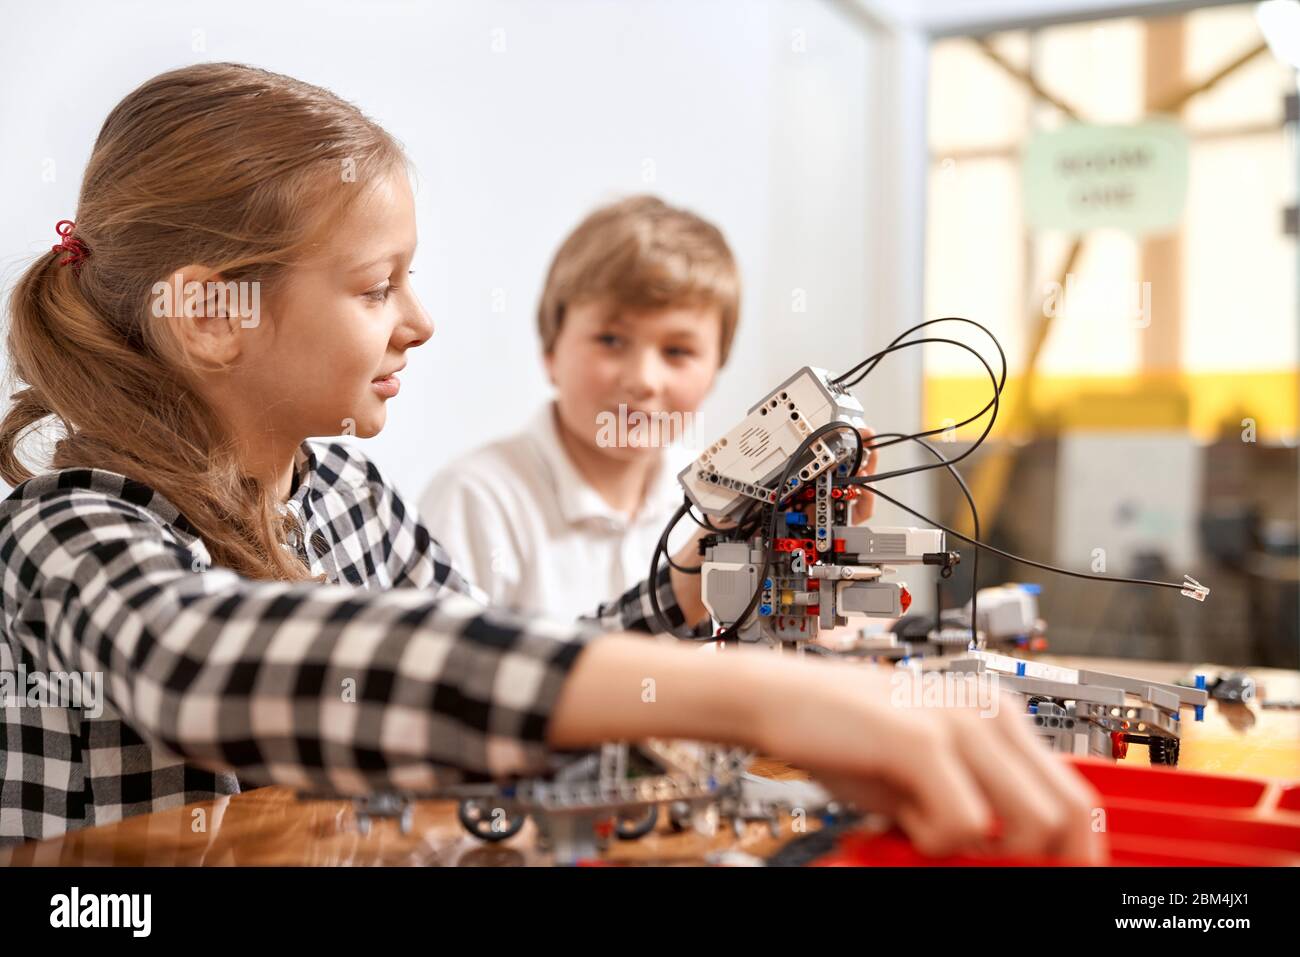 Vue latérale d'un garçon aidant une fille à créer un robot en utilisant le kit de construction pour les enfants sur la table. Génie scientifique. Des amis agréables et intéressés souriant, discutant et travaillant ensemble sur le projet. Banque D'Images